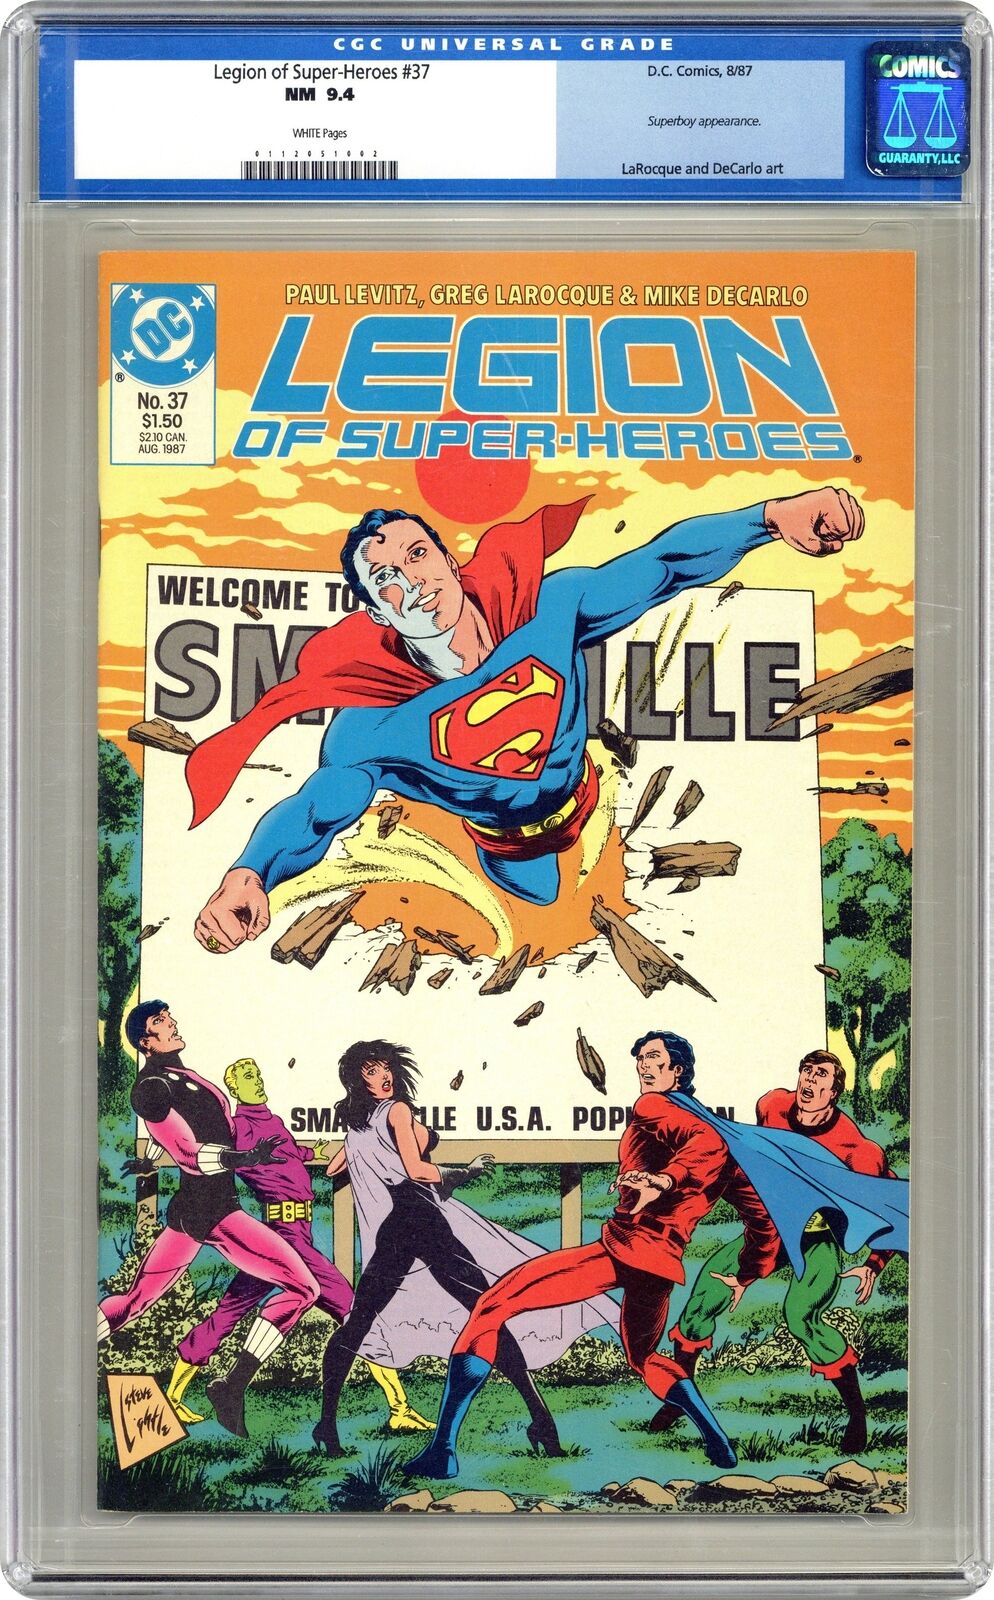 Legion of Super-Heroes #37 CGC 9.4 1987 0112051002